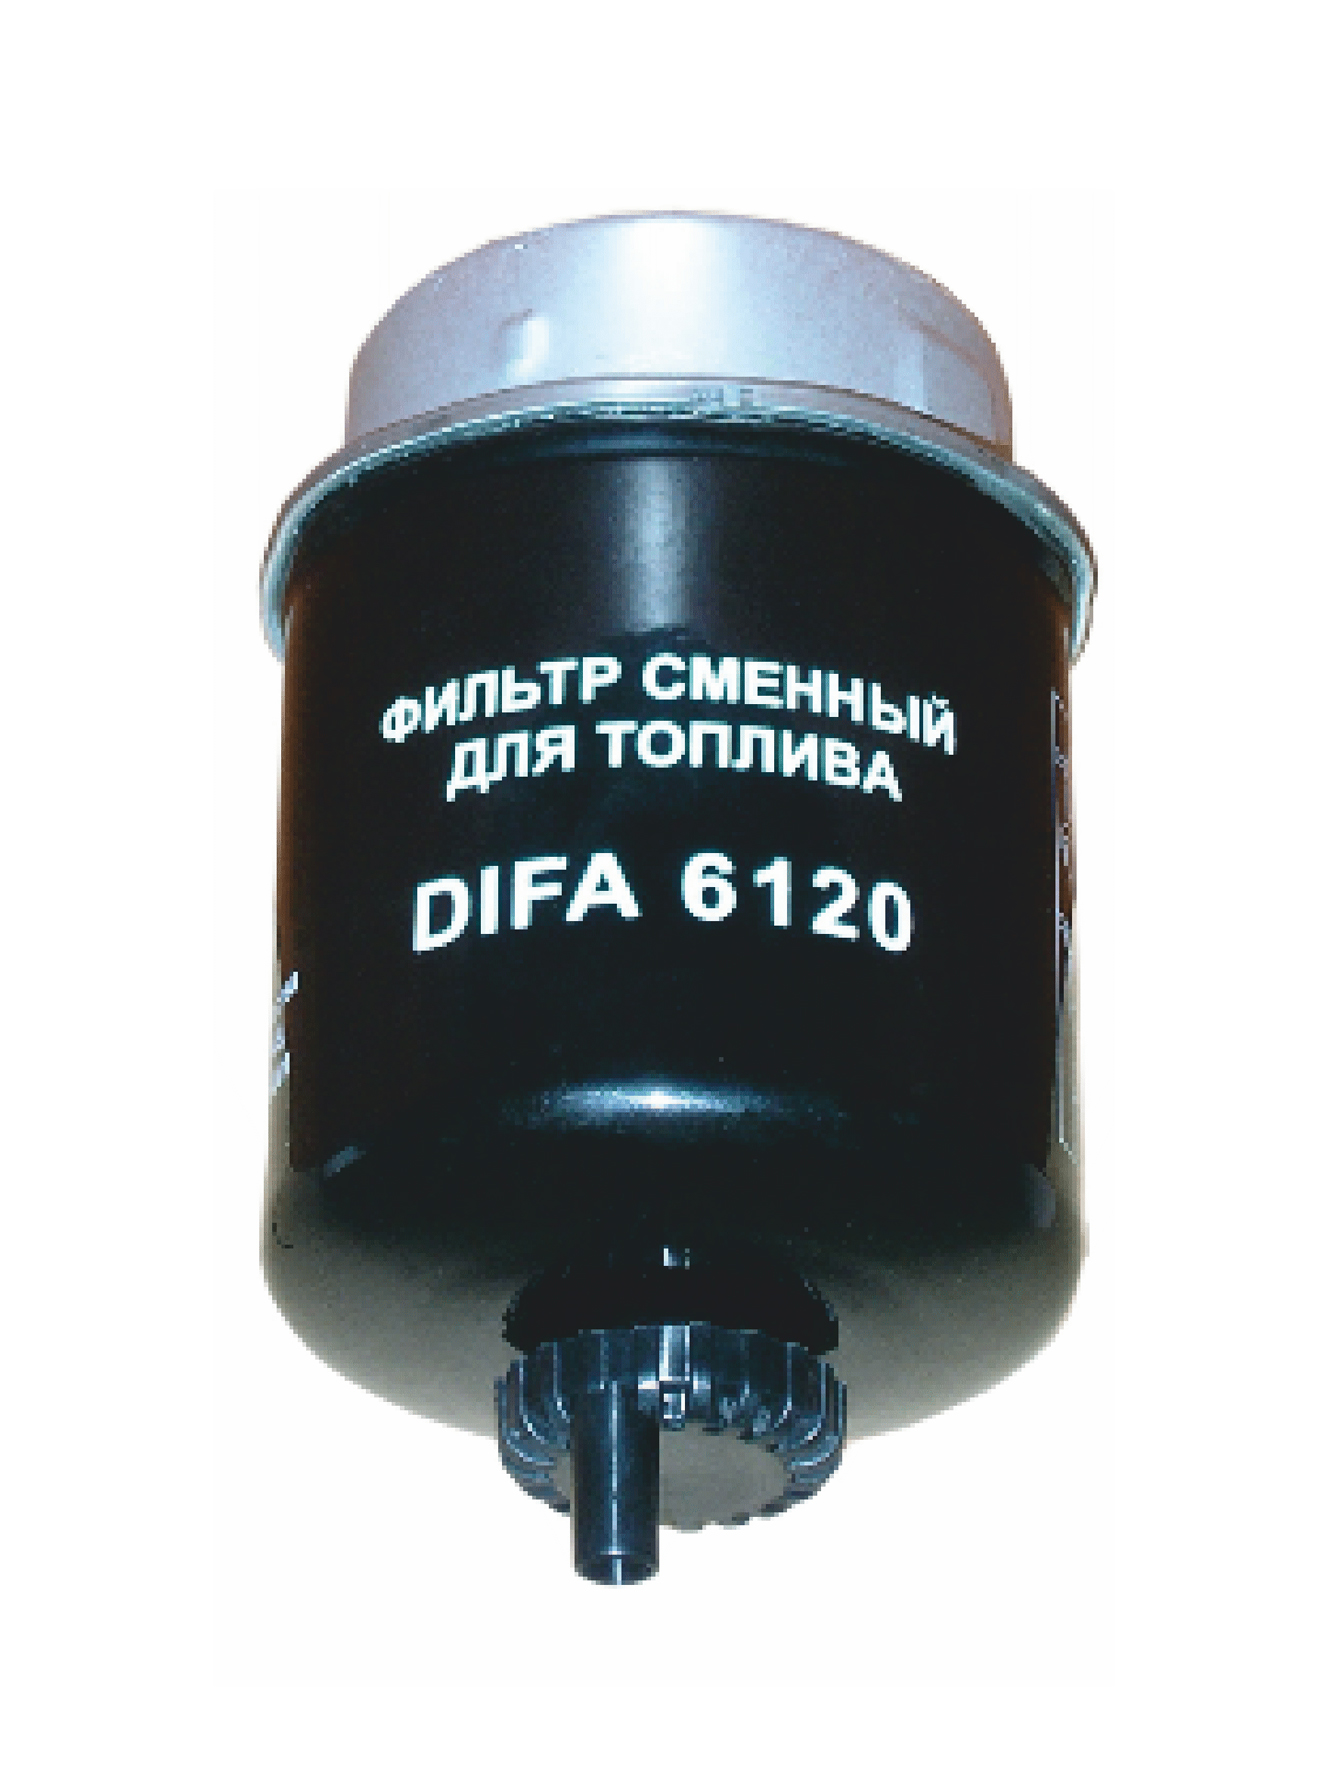 DIFA6120 DIFA Т6120 Фильтр тон.оч.топлива ДИФА (32925694WK8113)